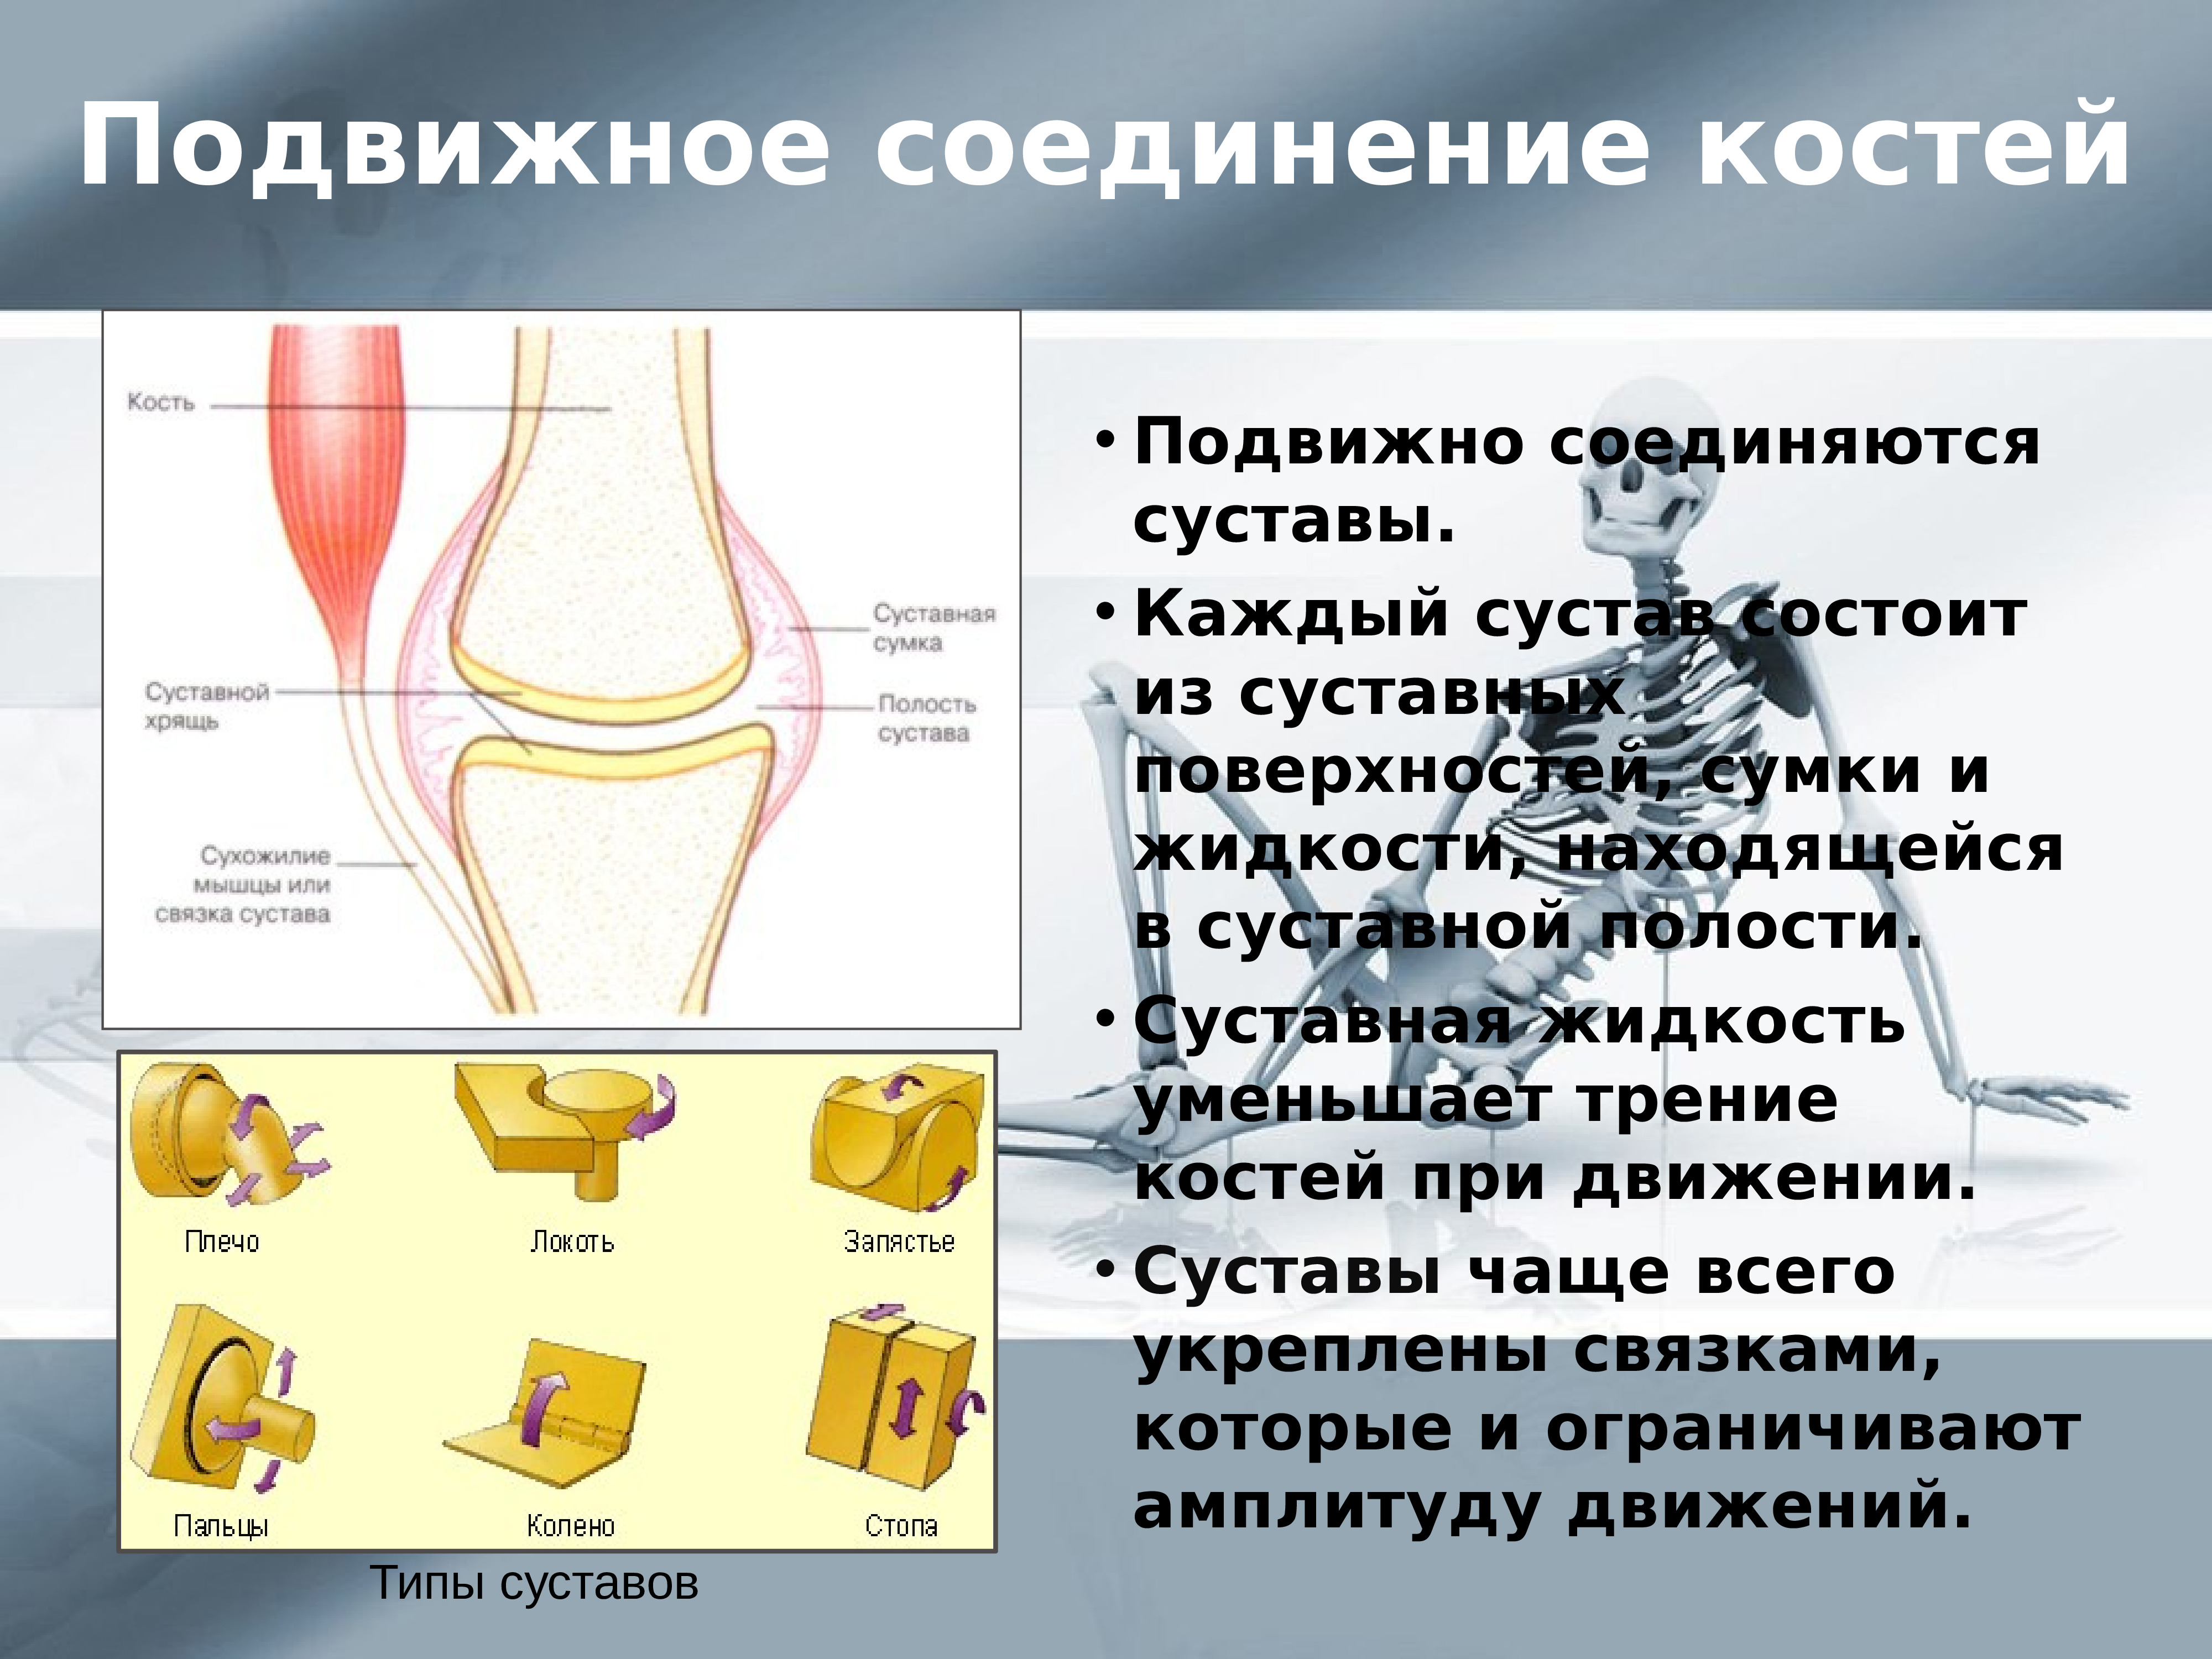 Подвижное соединение костей суставы. Подвижное соединение костей. Подвижные соединения костей. Подвижное соединение костей сустав. Уменьшает трение суставных поверхностей костей.